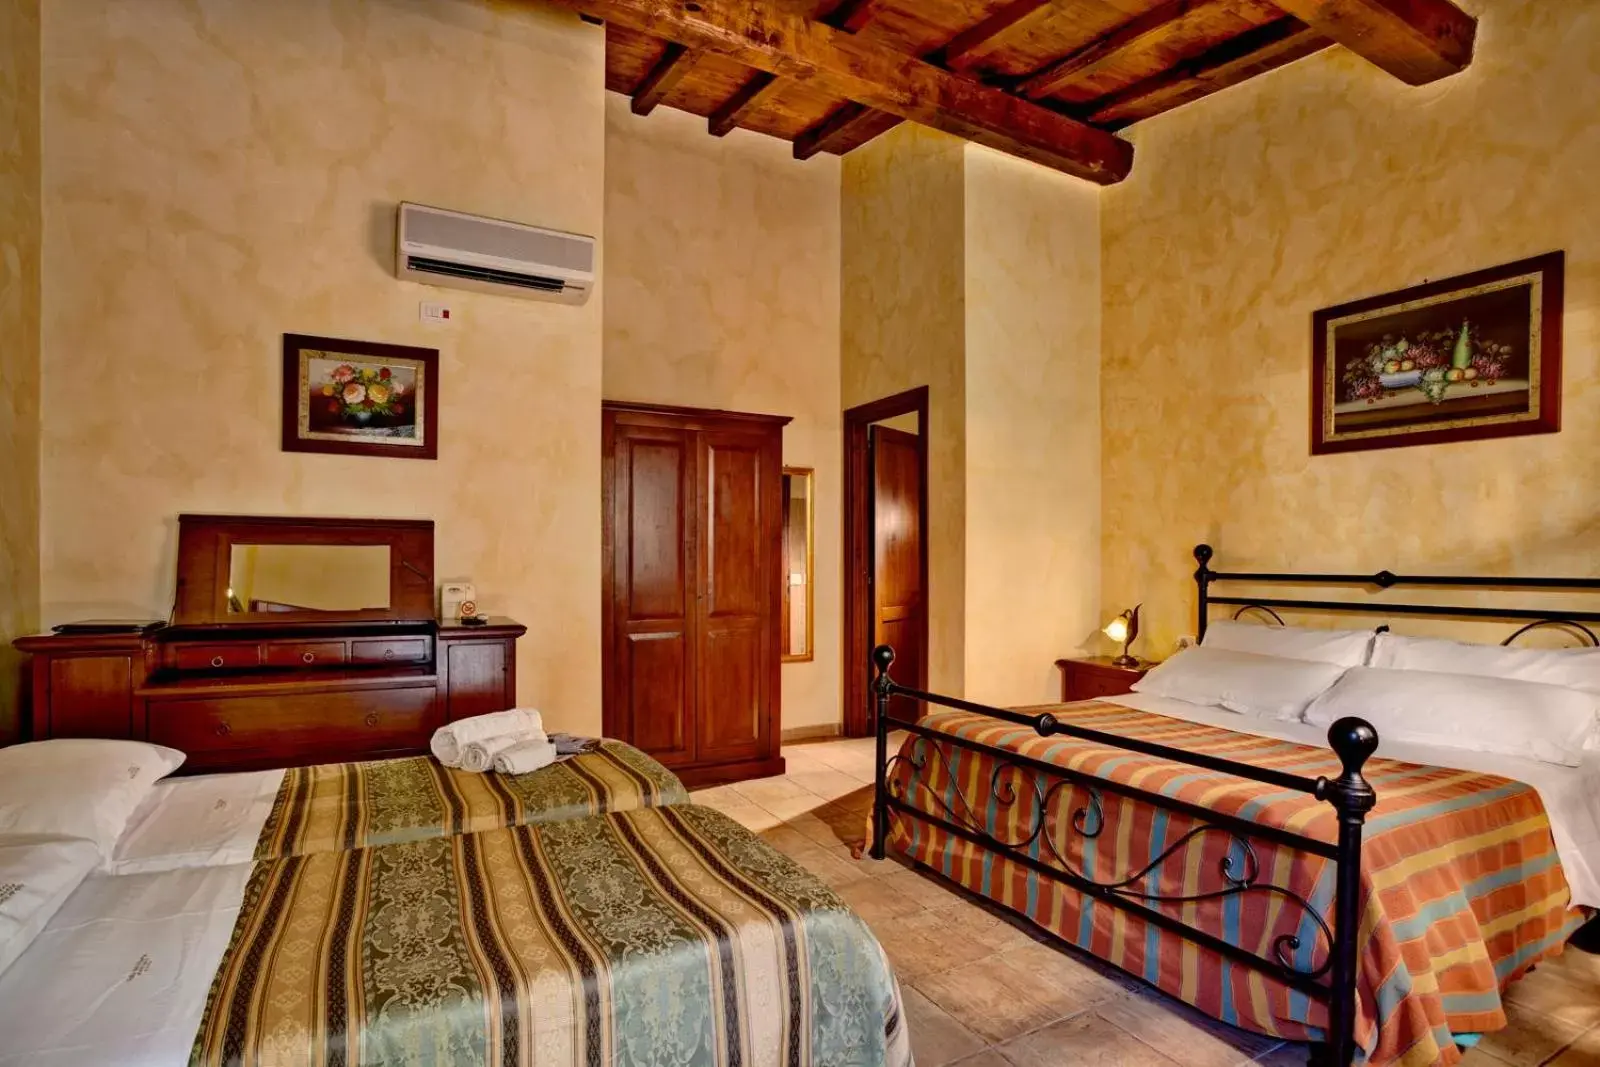 Bed, Room Photo in Villa Hotel Valle Del Marta Resort